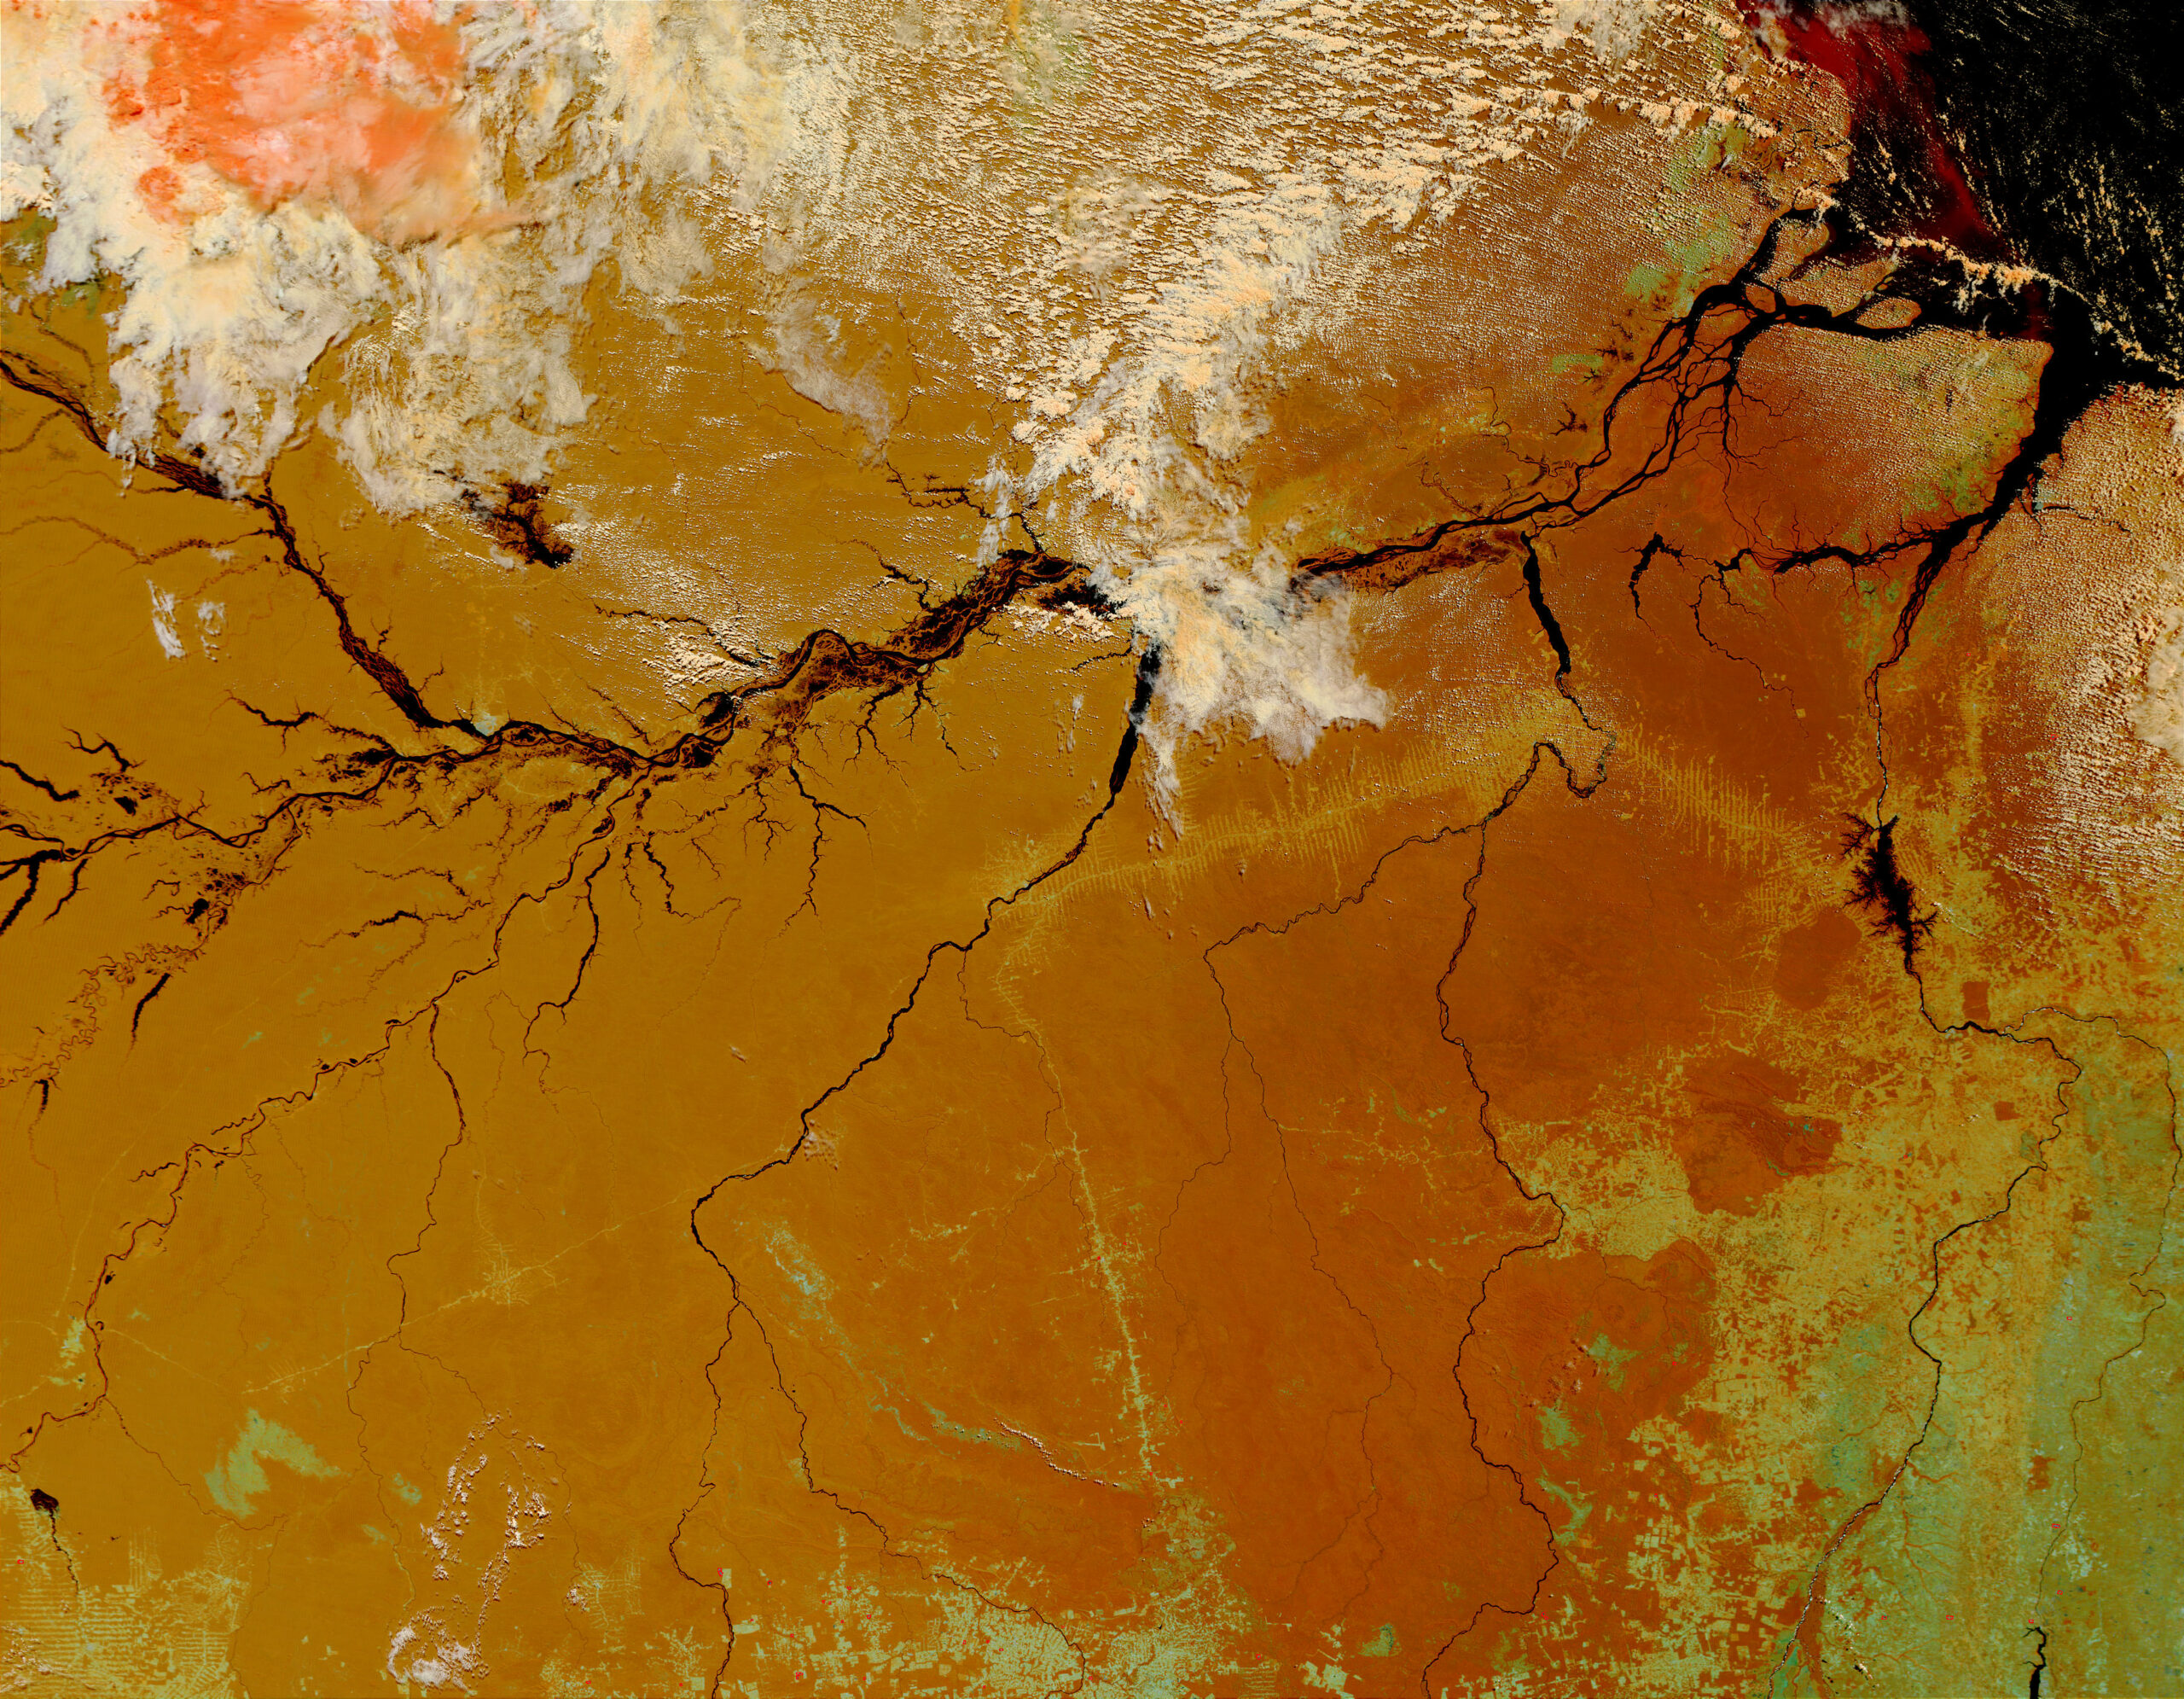 La distribución de precipitaciones y sequías está cambiando en la cuenca amazónica